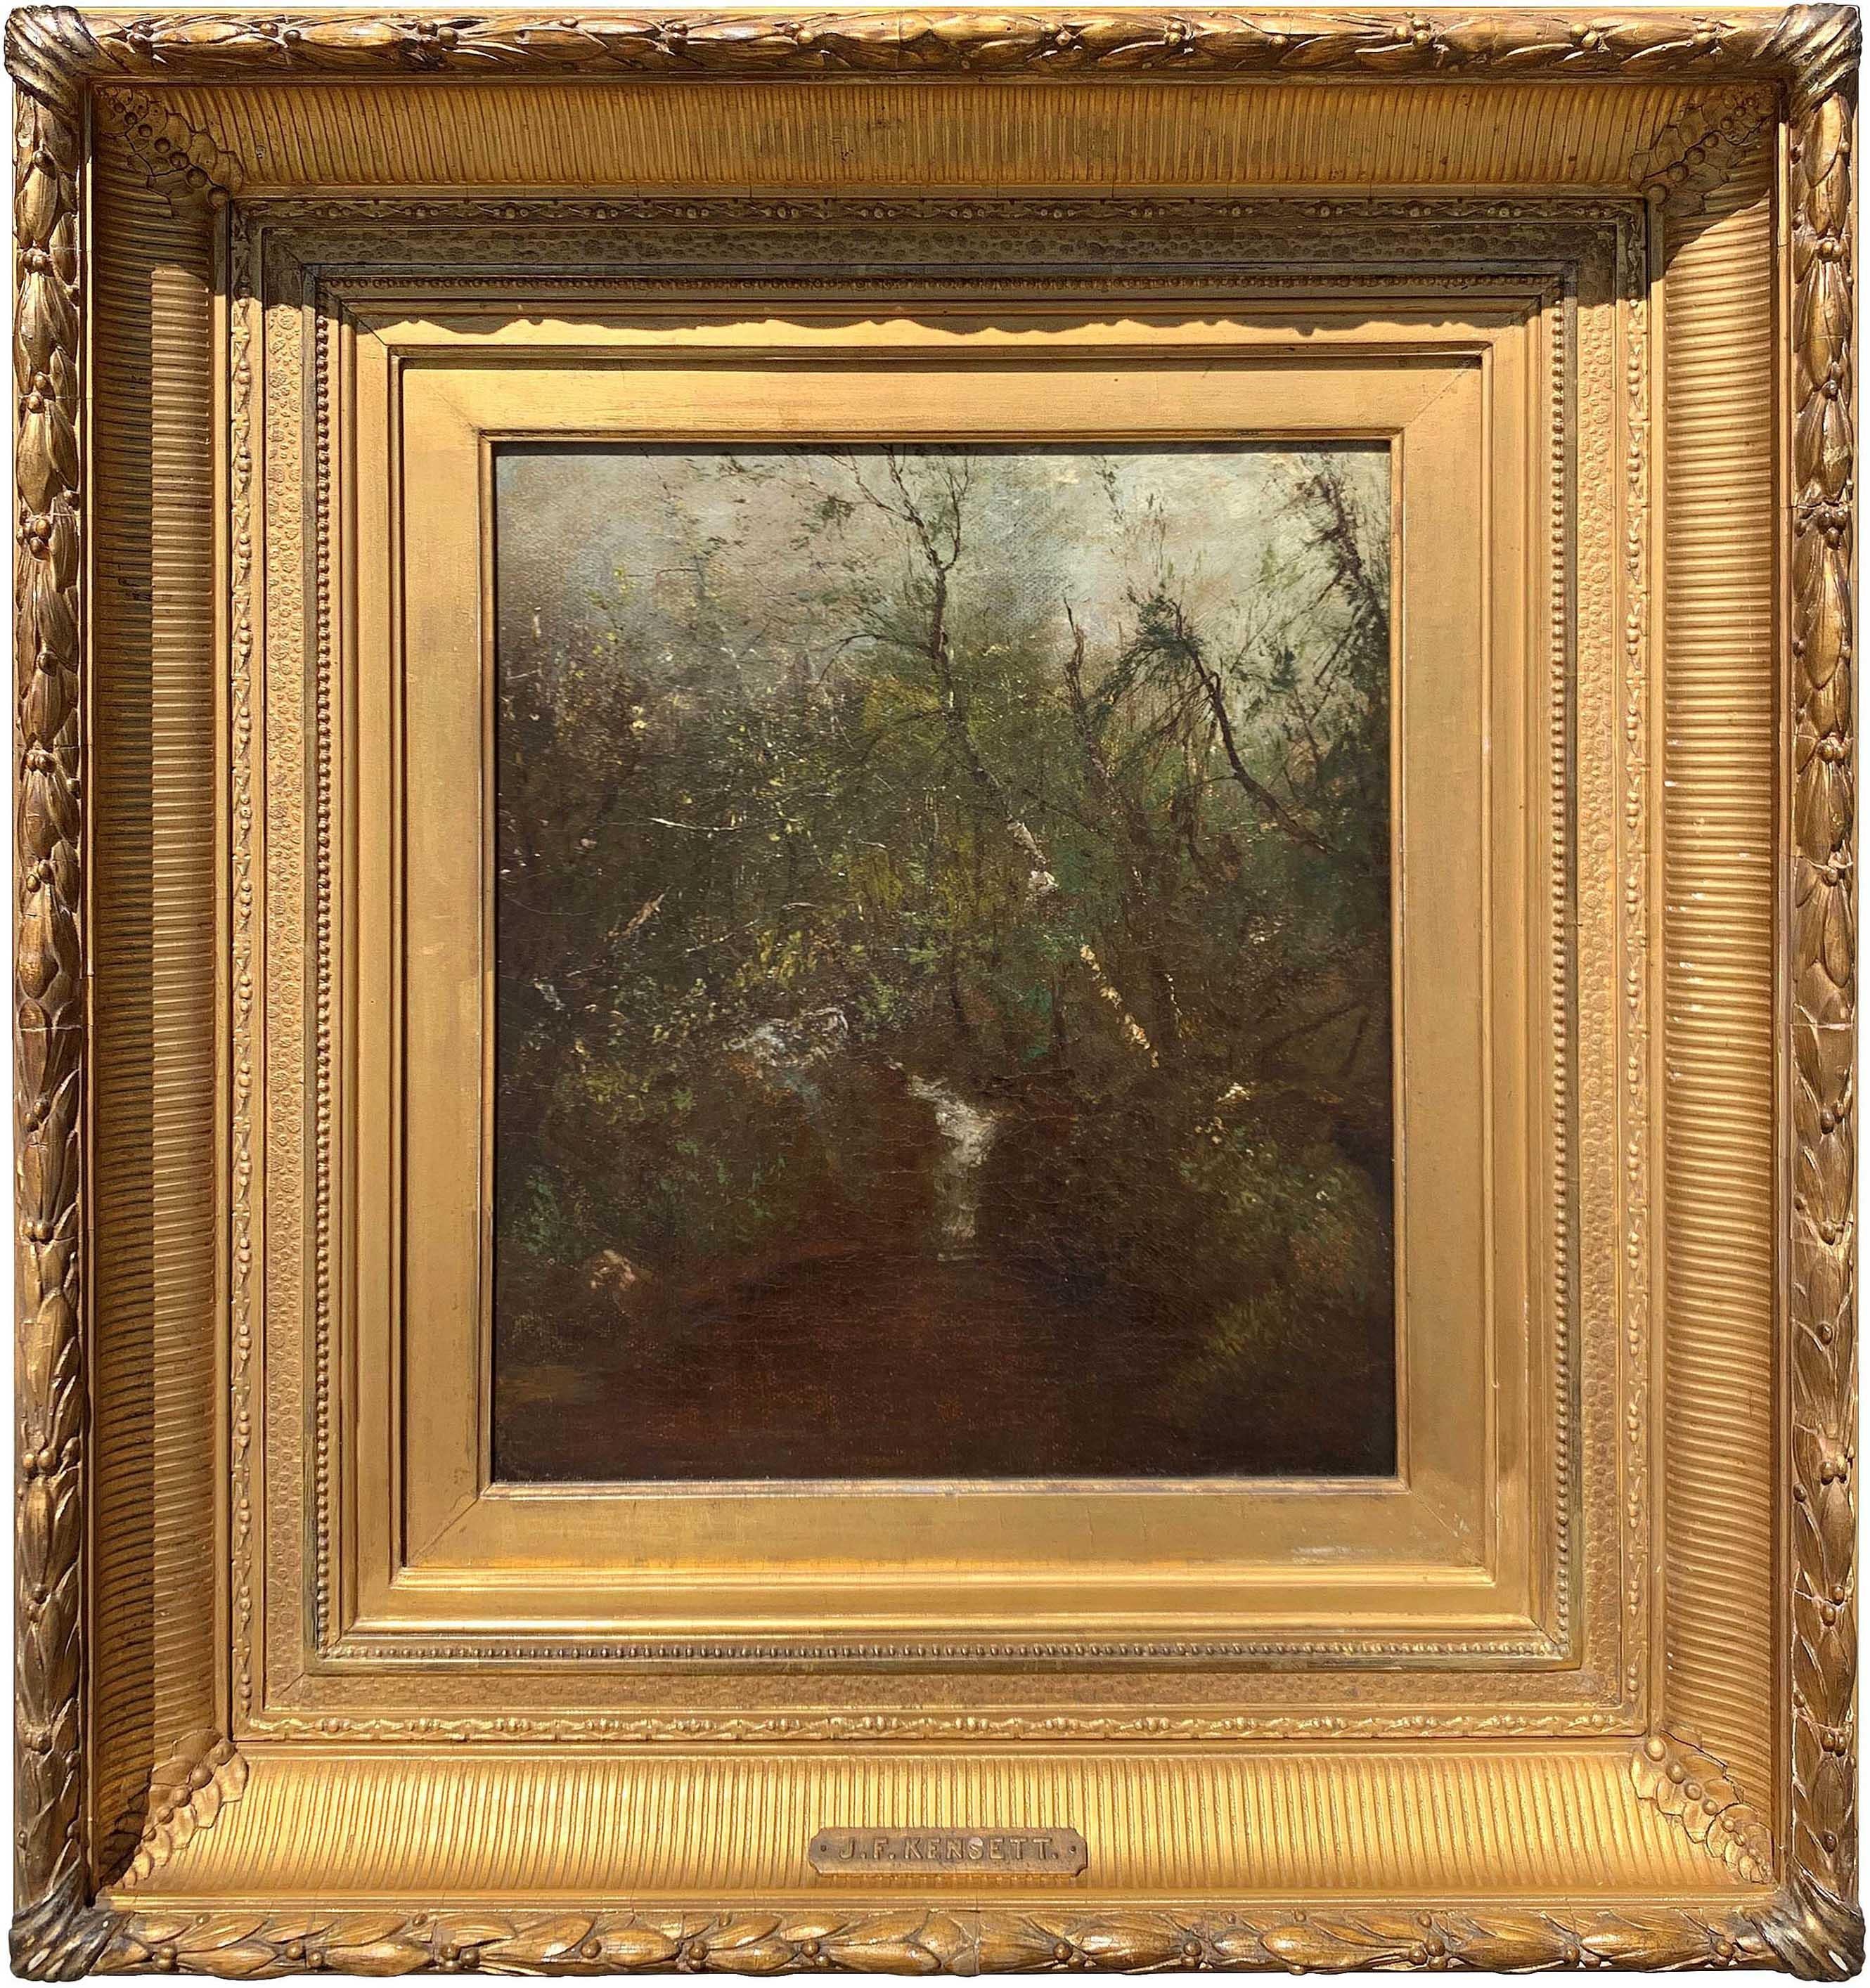 JOHN FREDERICK KENSETT (1816-1872)
Cascade en forêt
Huile sur toile
14 x 12 pouces
Signé en bas à droite


